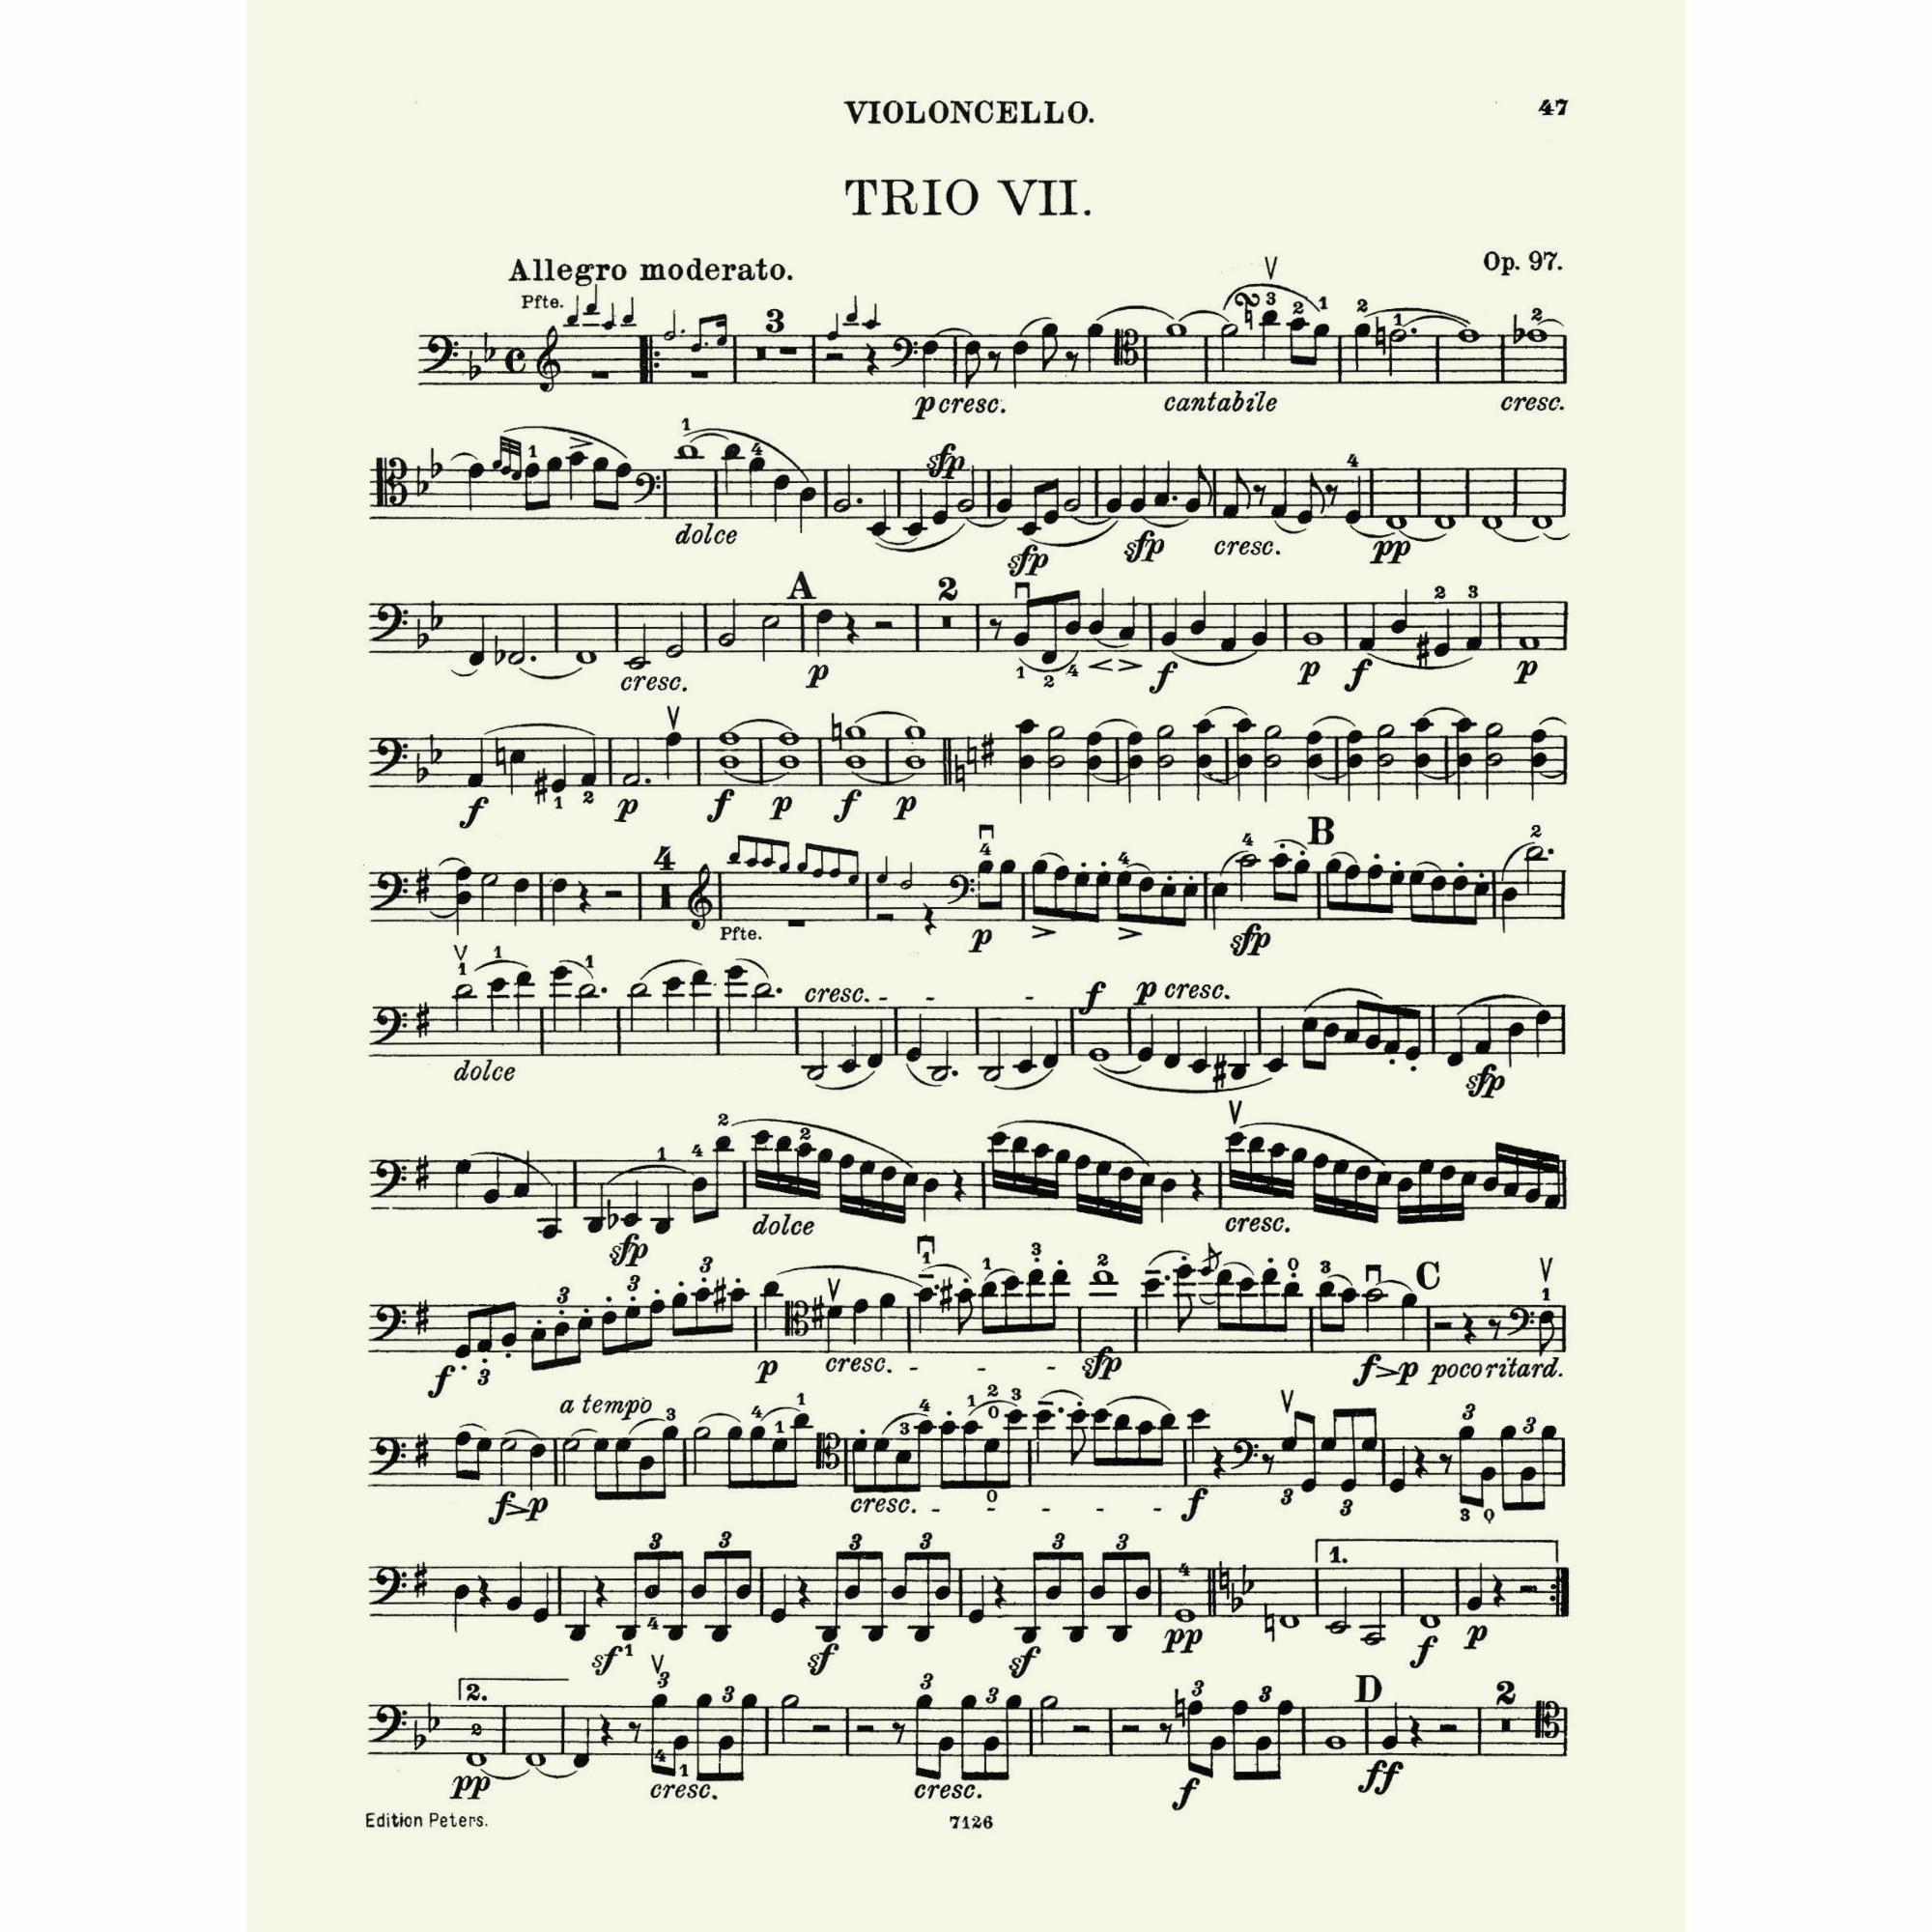 Sample: Cello (Pg. 1 [47])